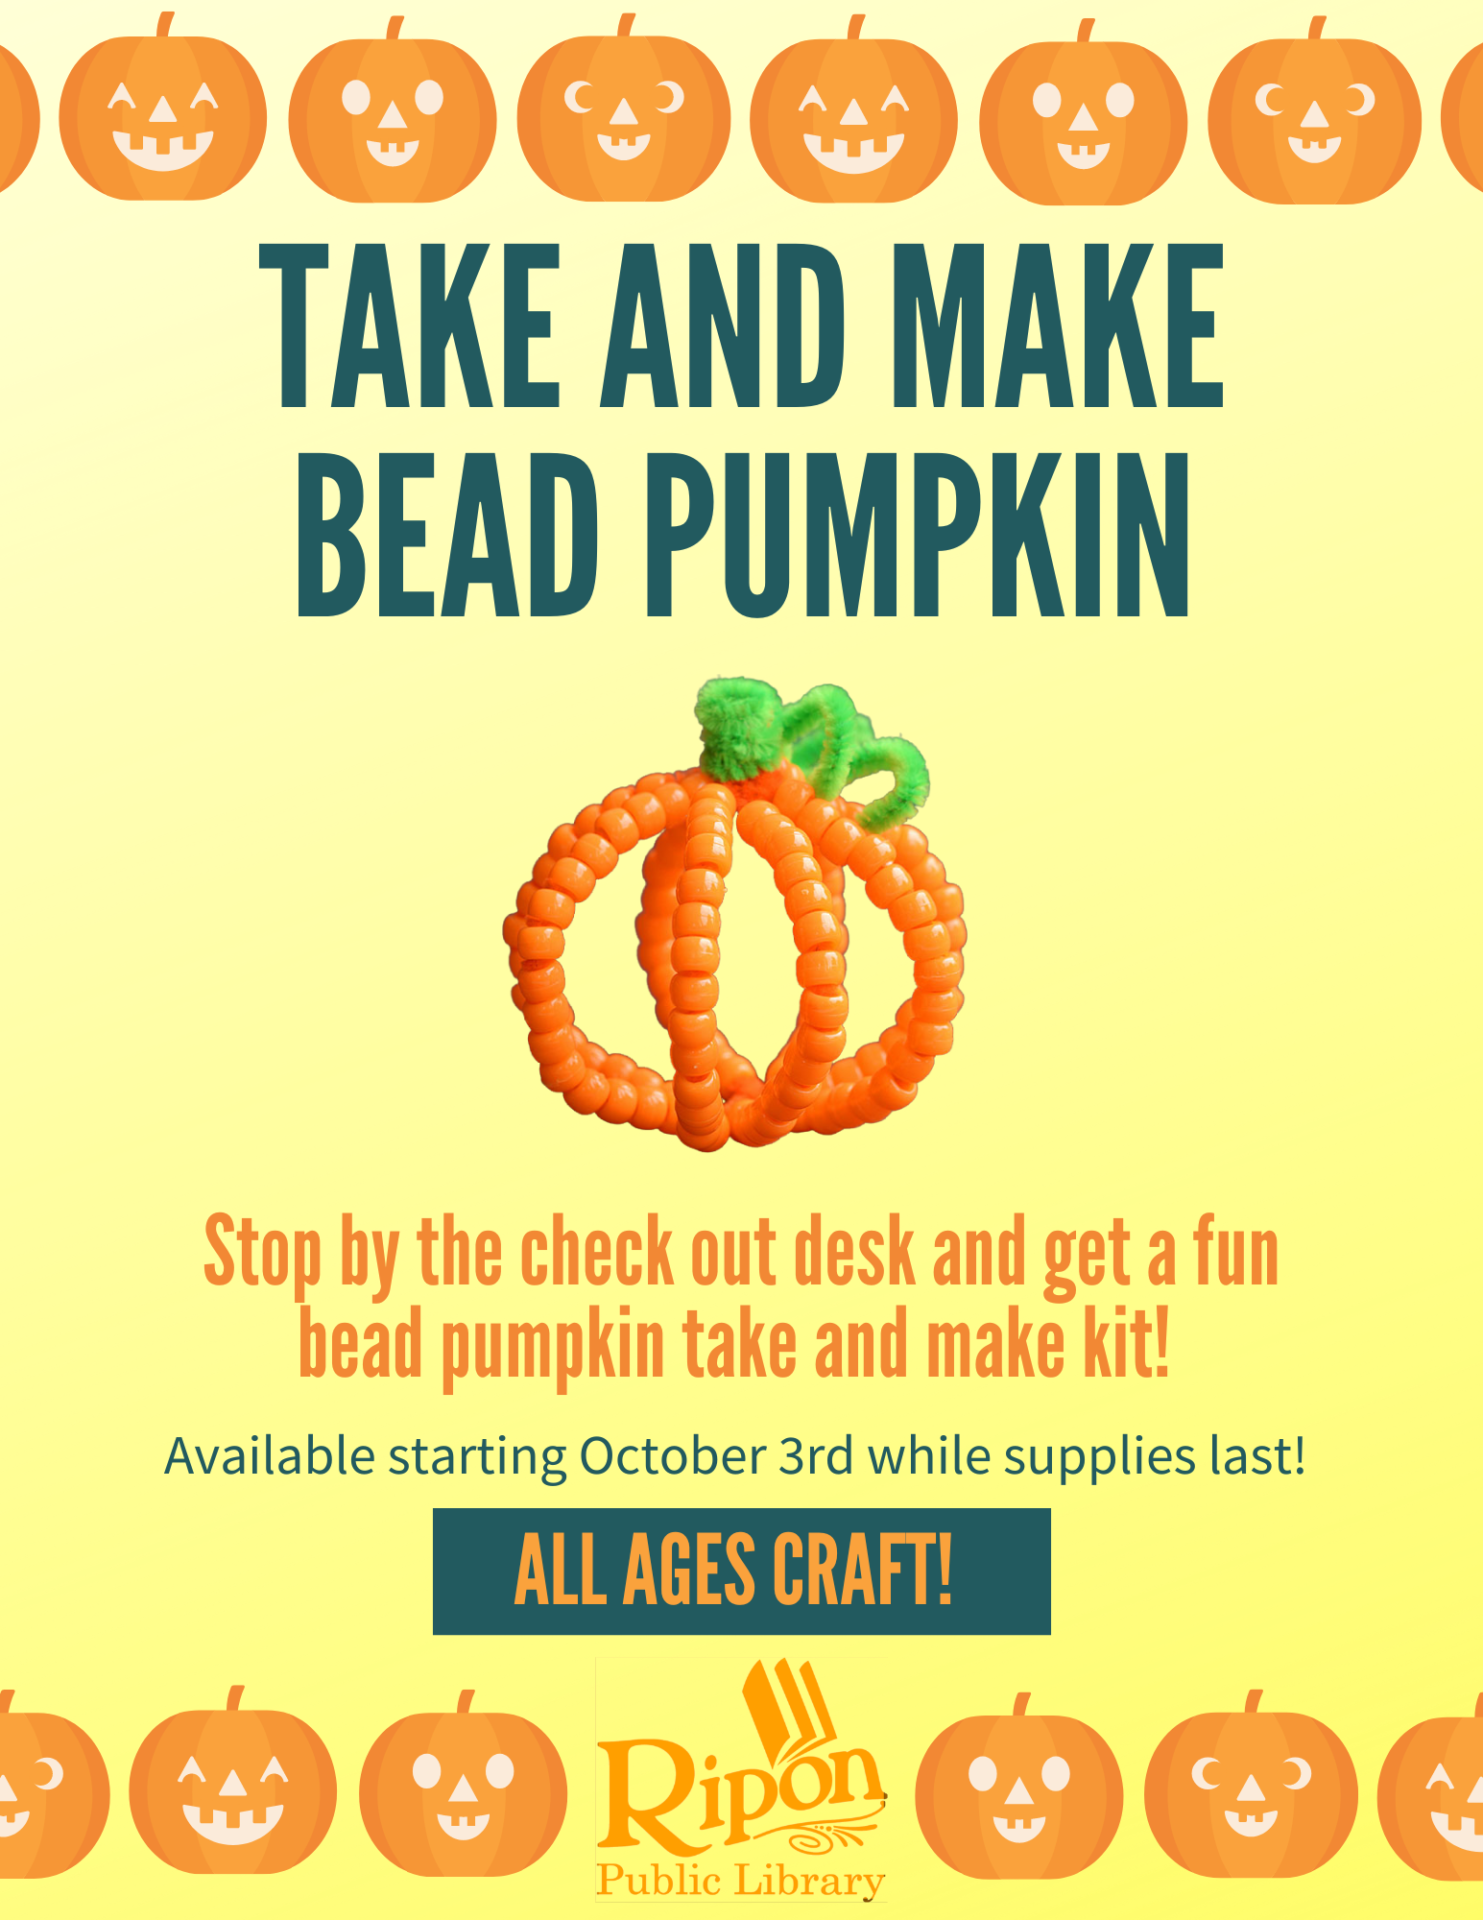 Take and Make Bead Pumpkin